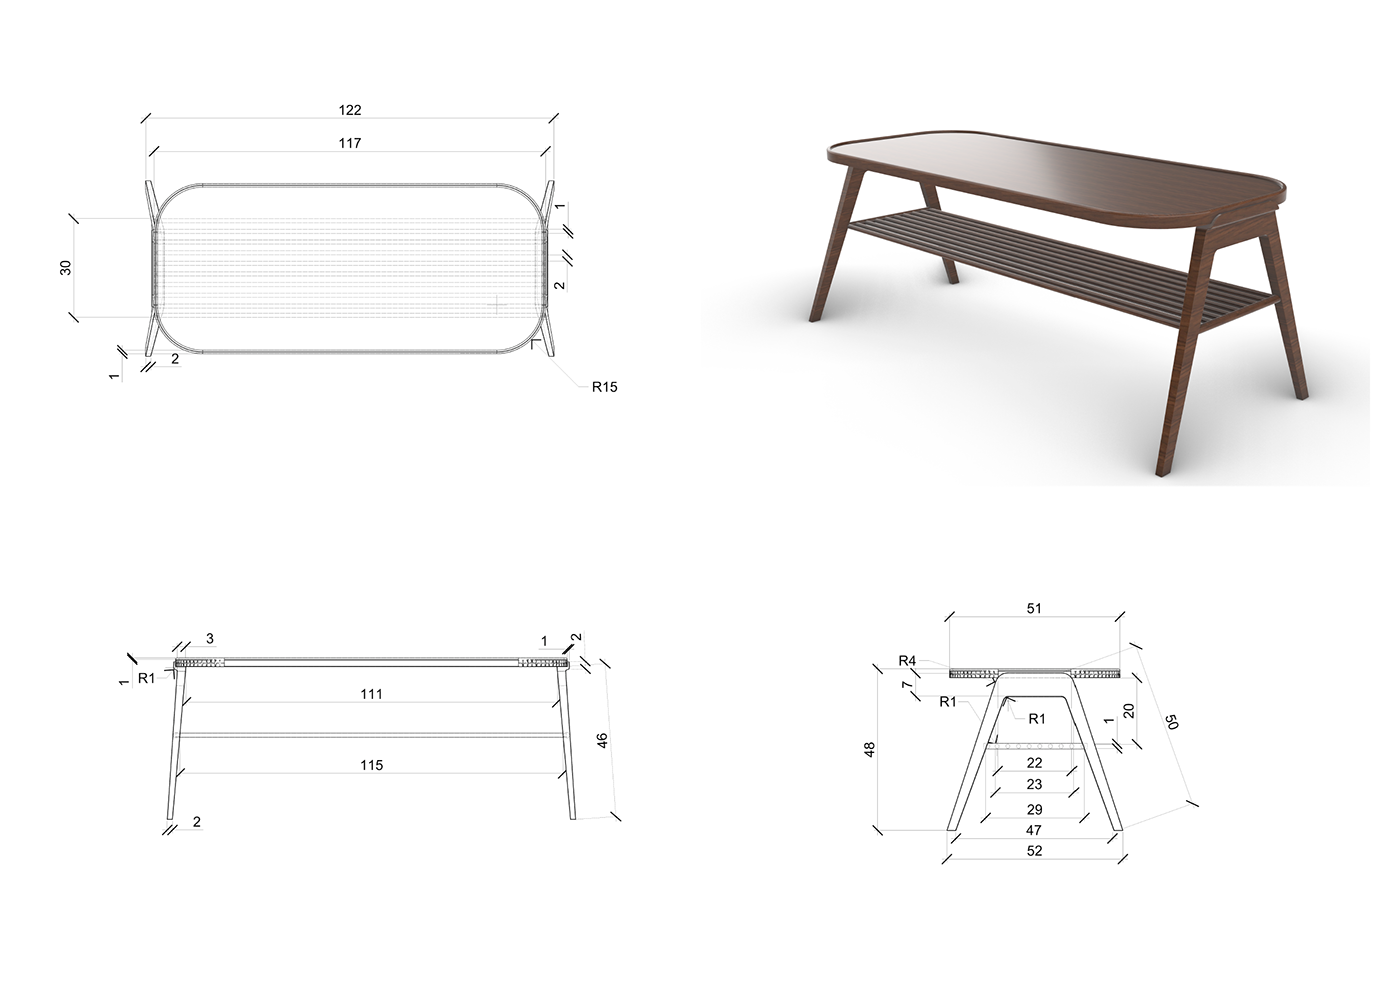 3D design furniture furnituredesign industrialdesign keyshot modern productdesign Render vintage